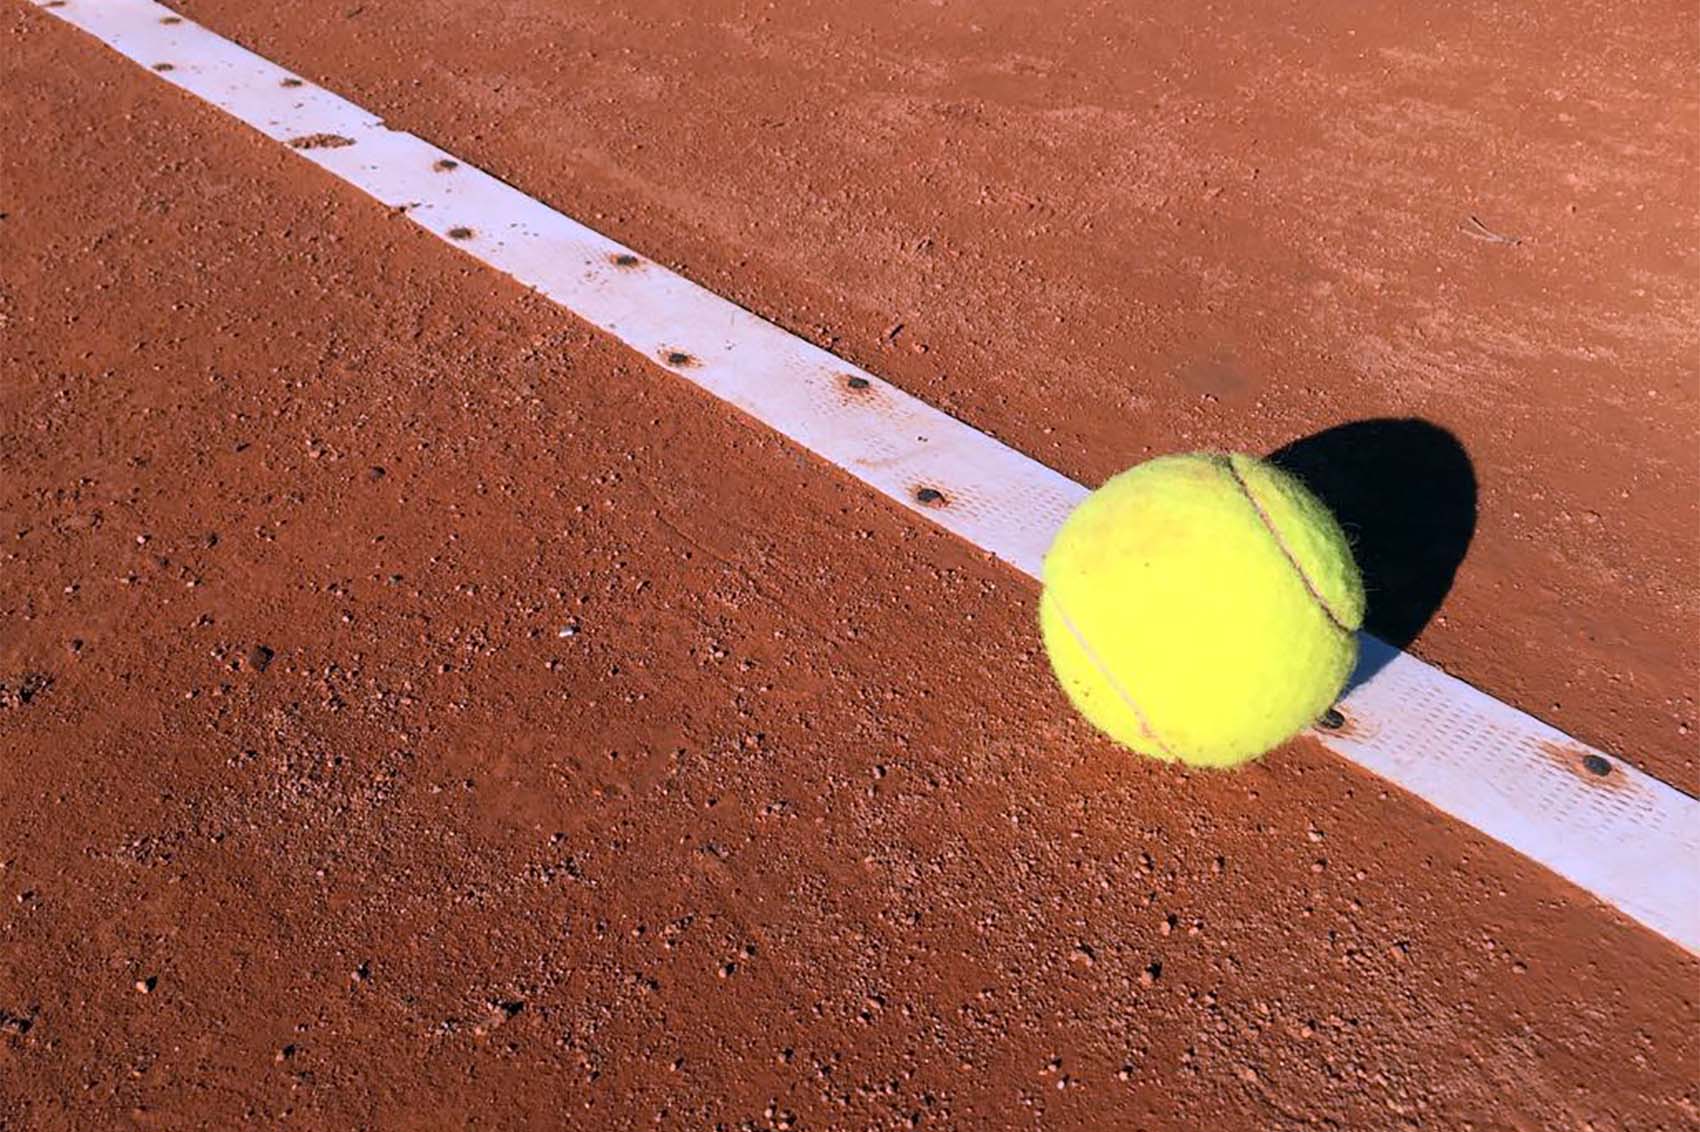 Un accordo tra i tre circoli aretini di tennis per la tutela della salute